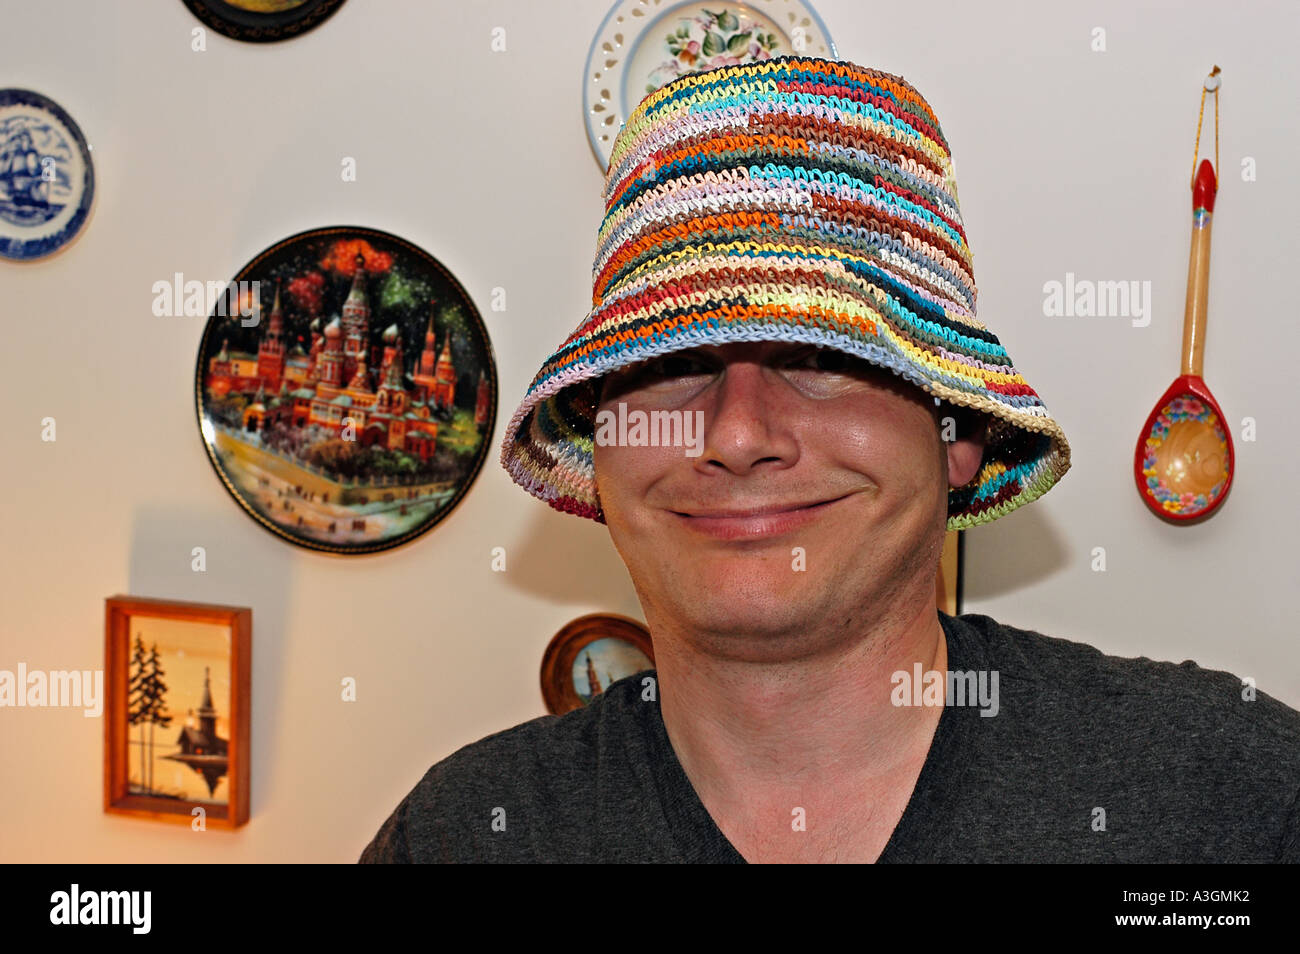 Un homme dans un chapeau ridicule Photo Stock - Alamy